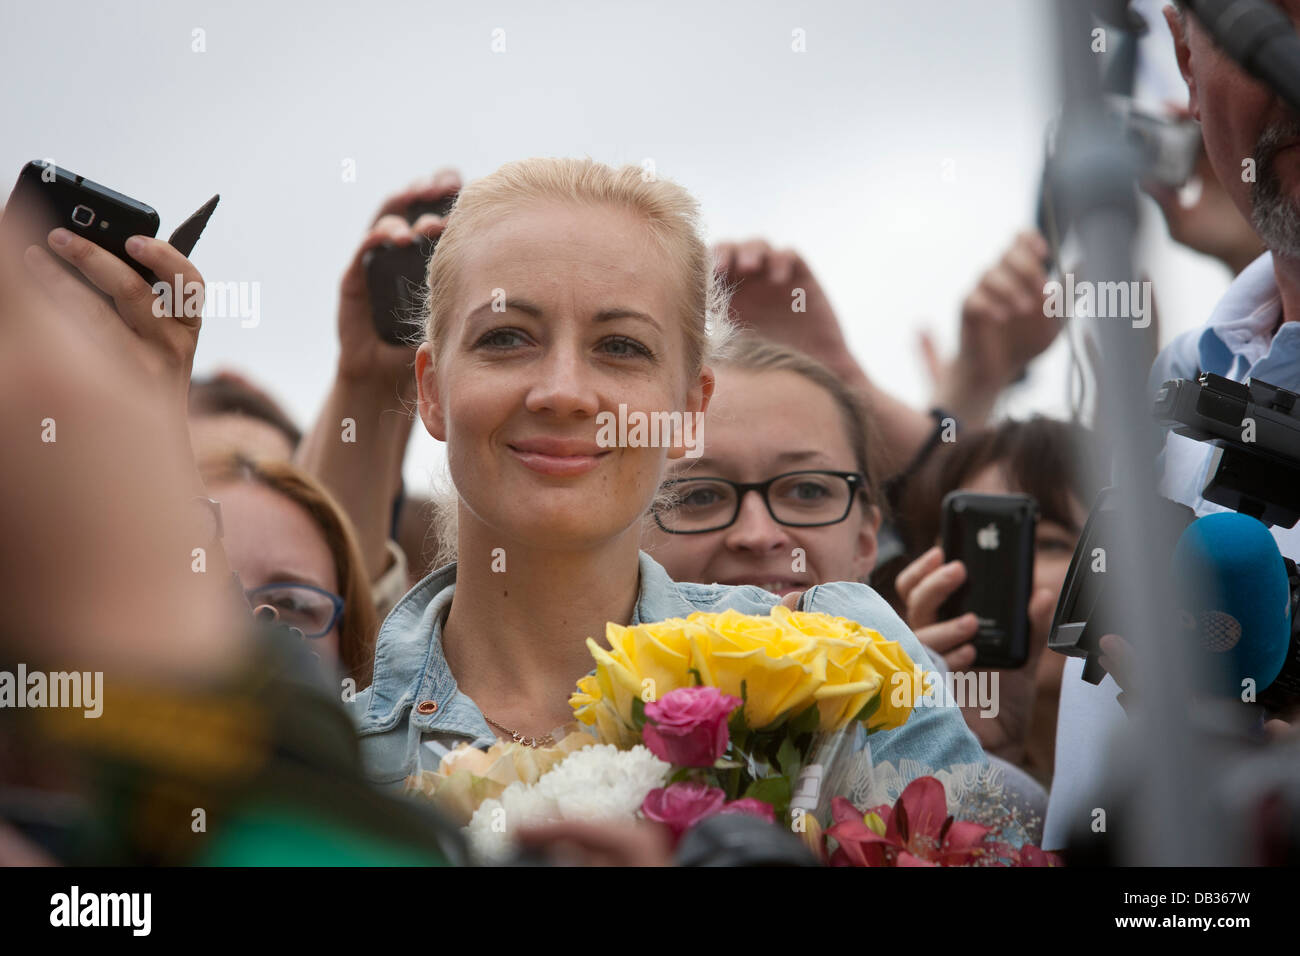 Жена навального на оскаре